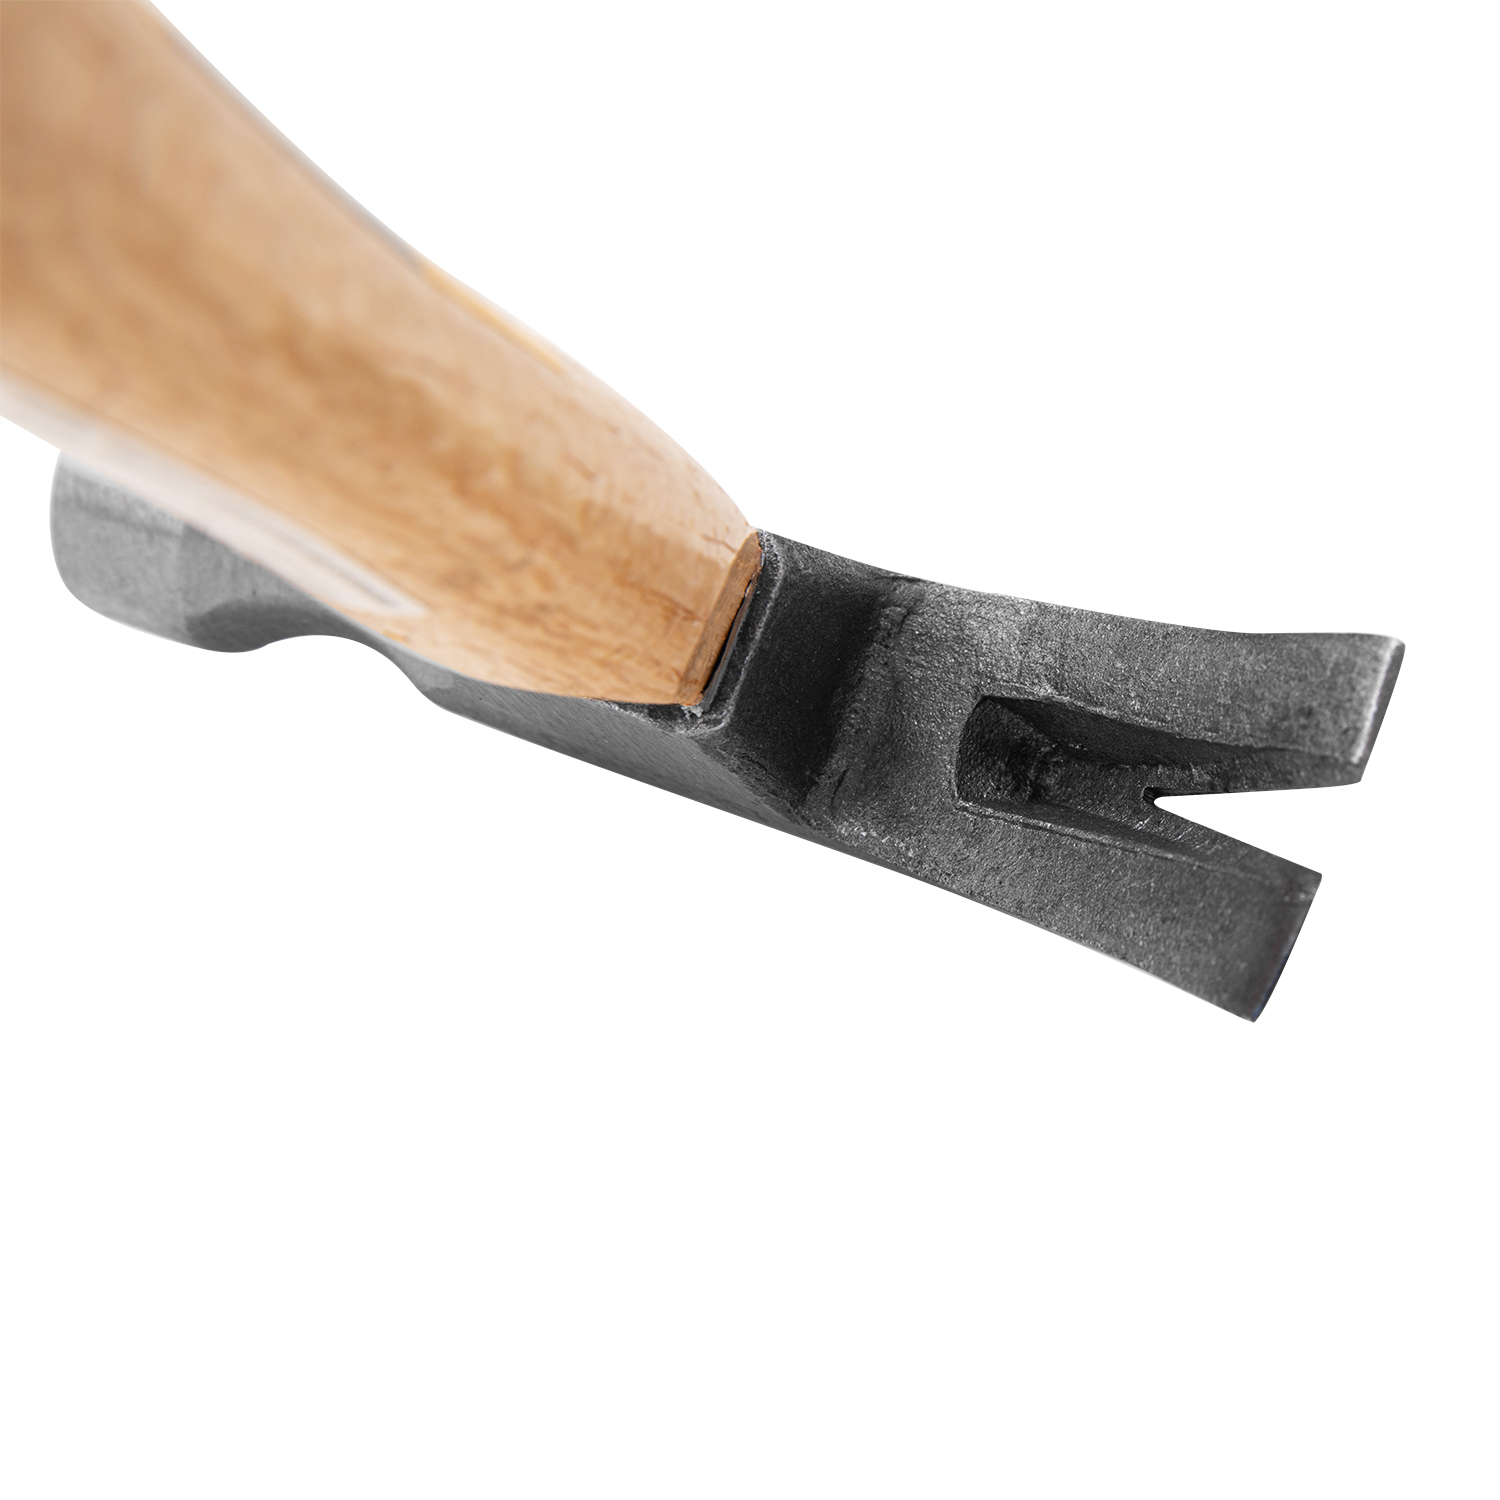 Claw Hammer 500g